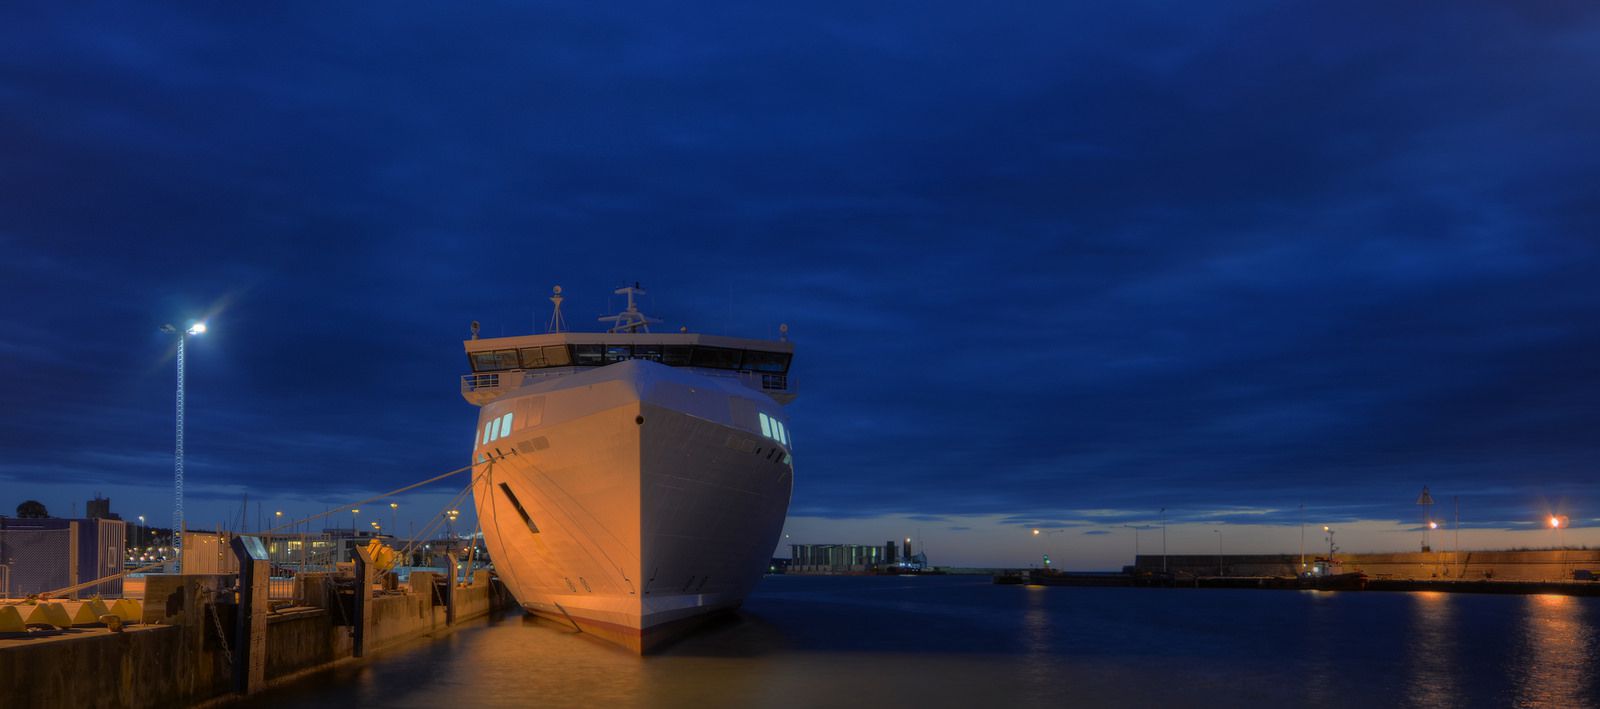 Корабль на пристани Висбю - Висбю, Швеция фото #32604